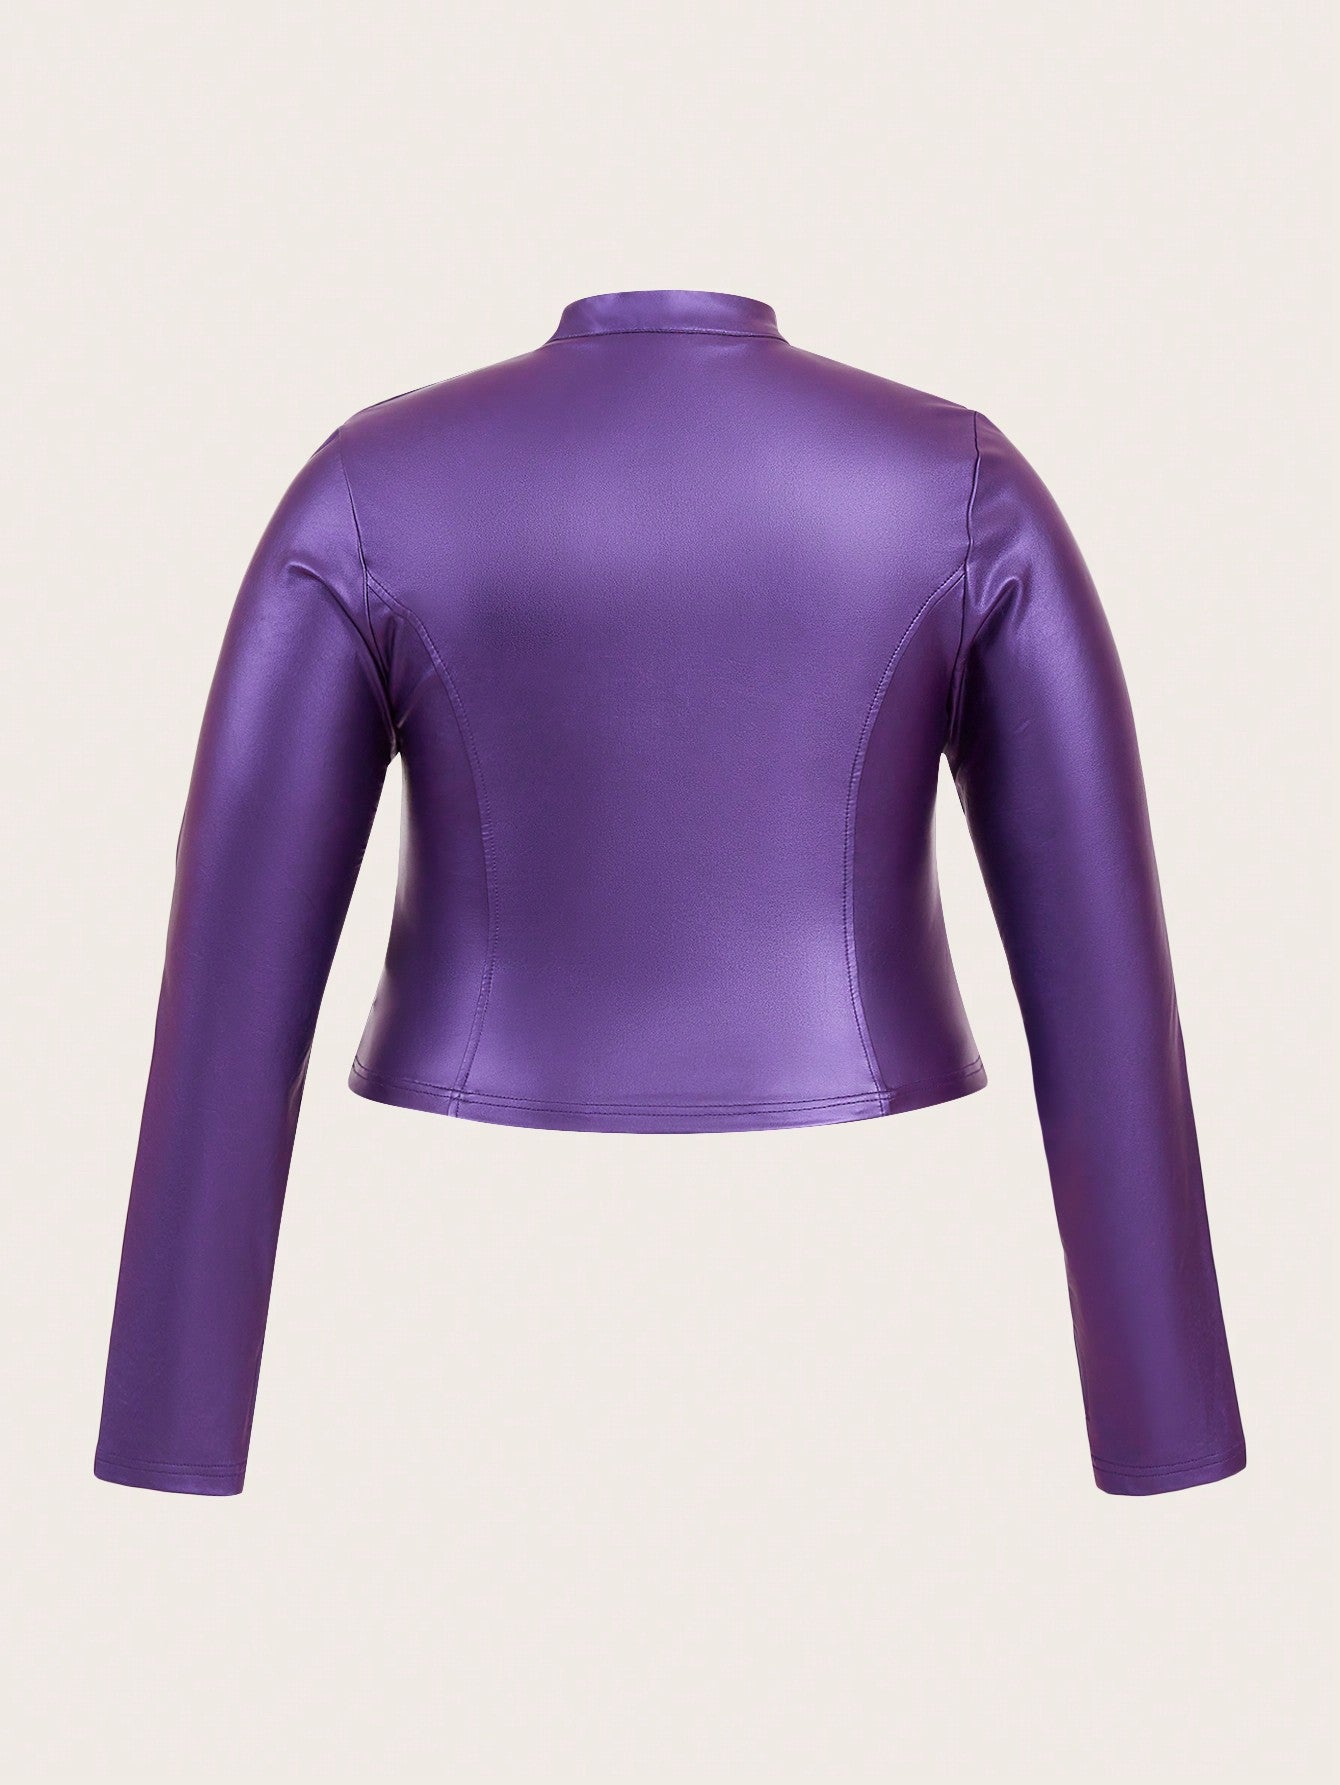 Purple metallic jacket backside